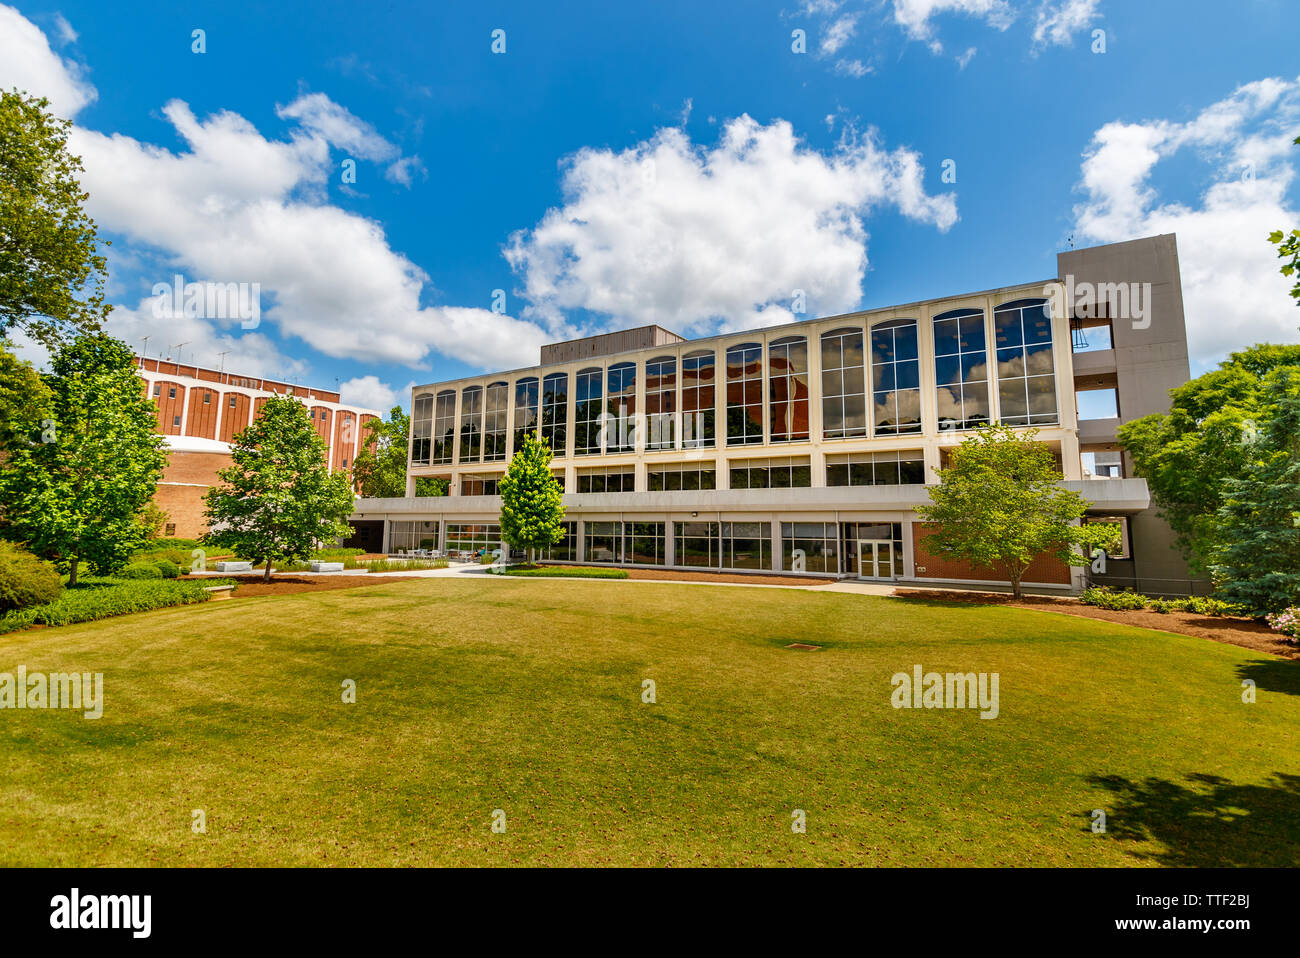 ATHENS, GA, USA - Mai 3: Journalismus Gebäude am 3. Mai 2019 an der Universität von Georgia in Athens, Georgia. Stockfoto